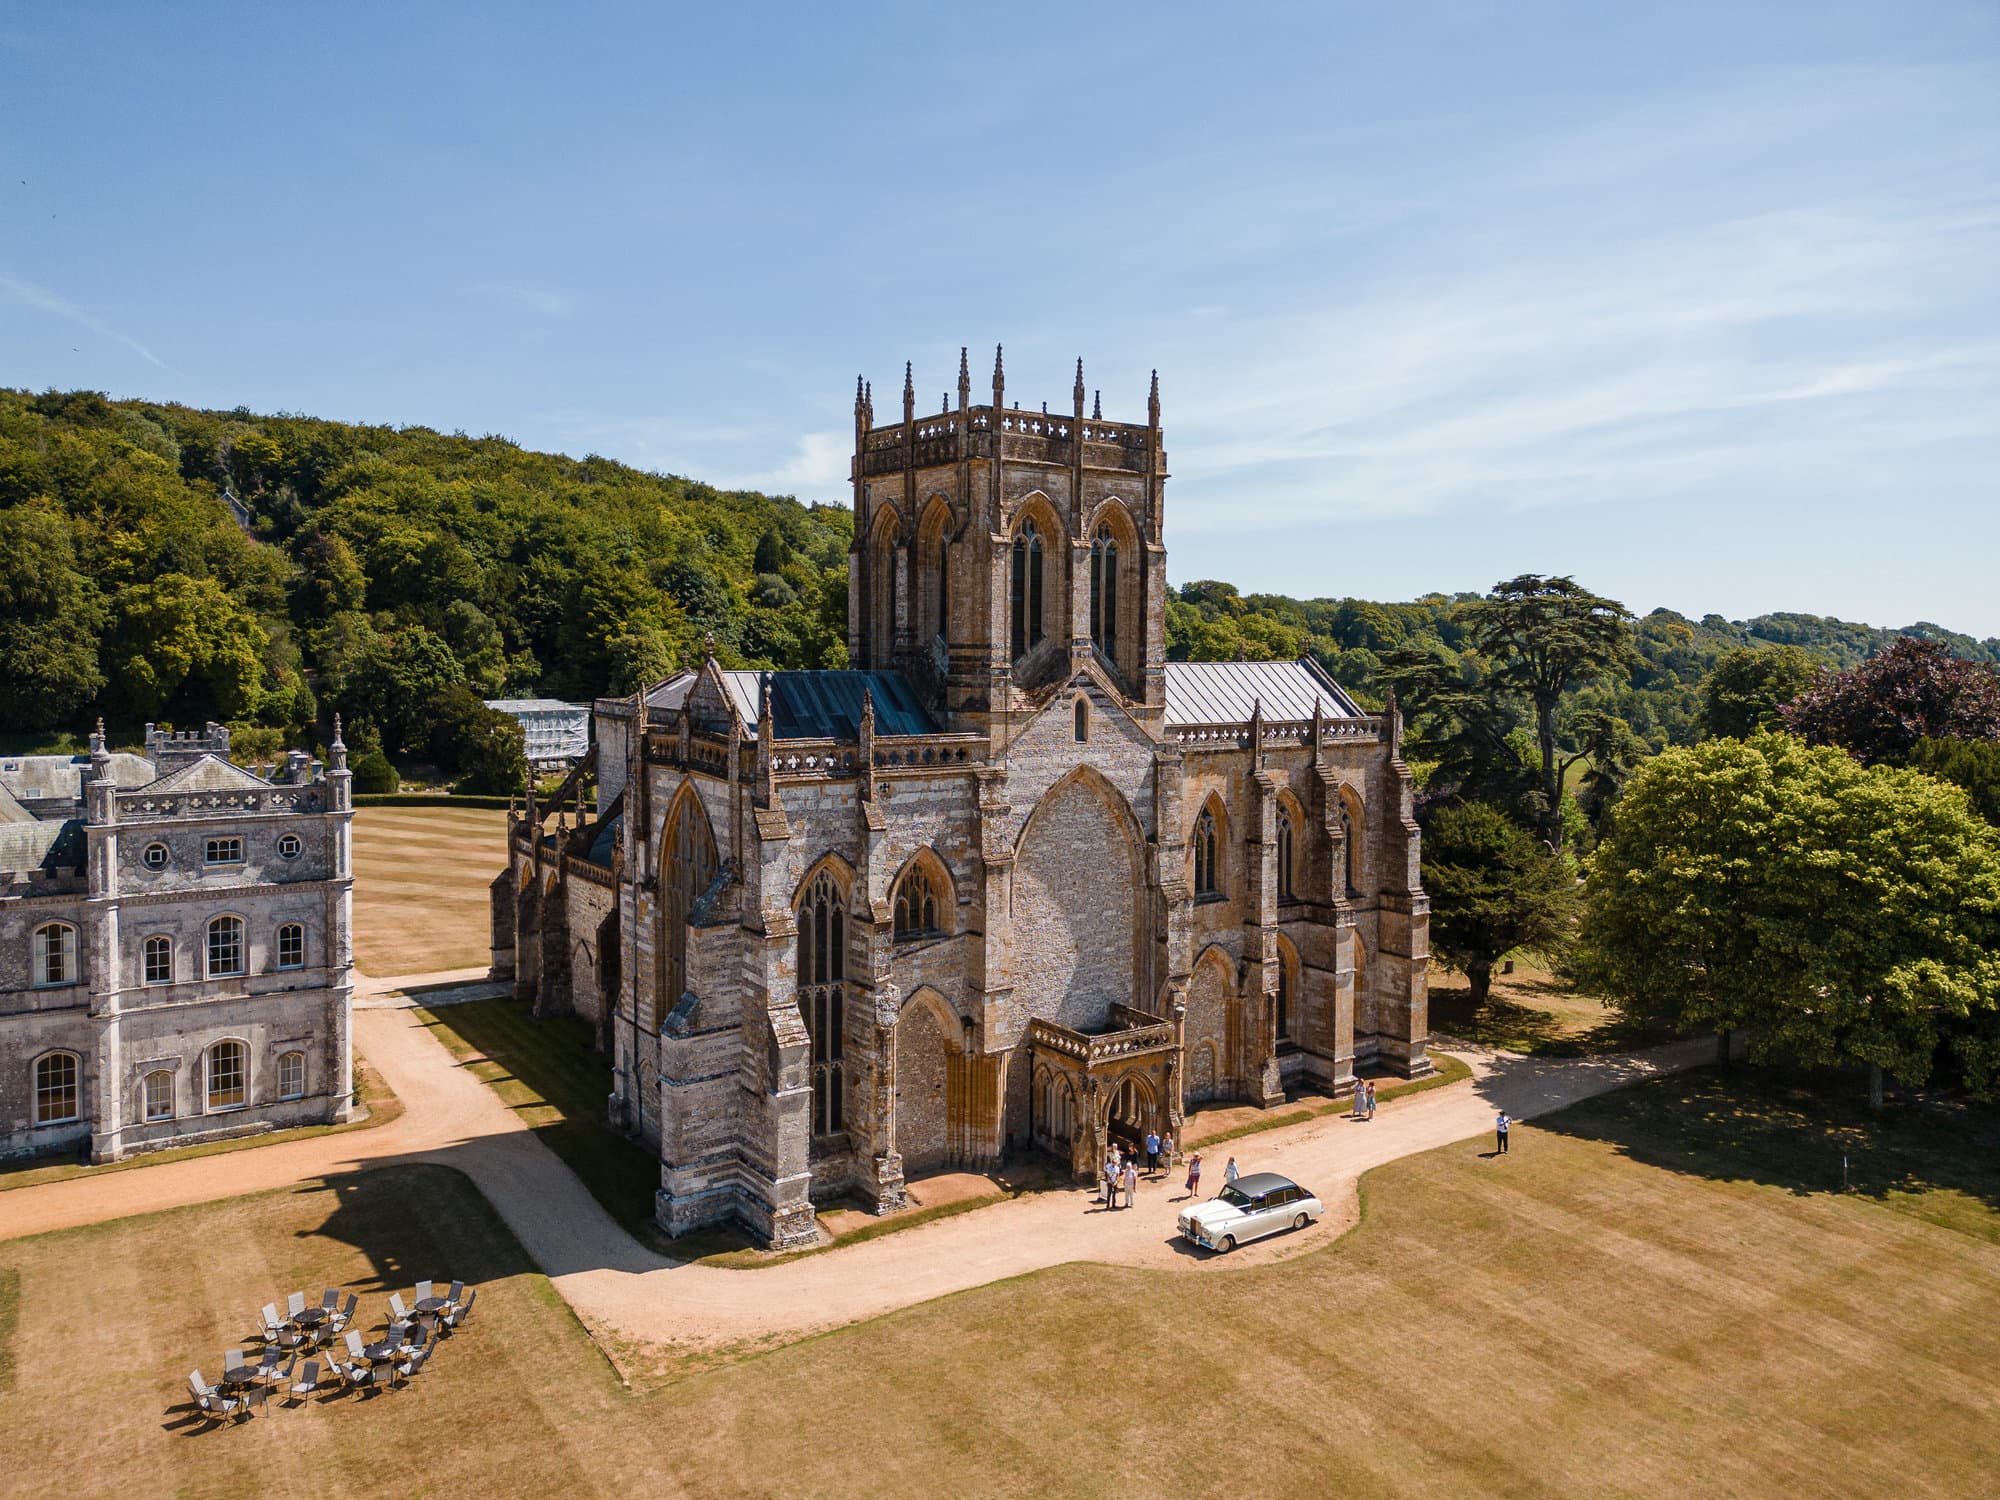 Milton Abbey church from the air